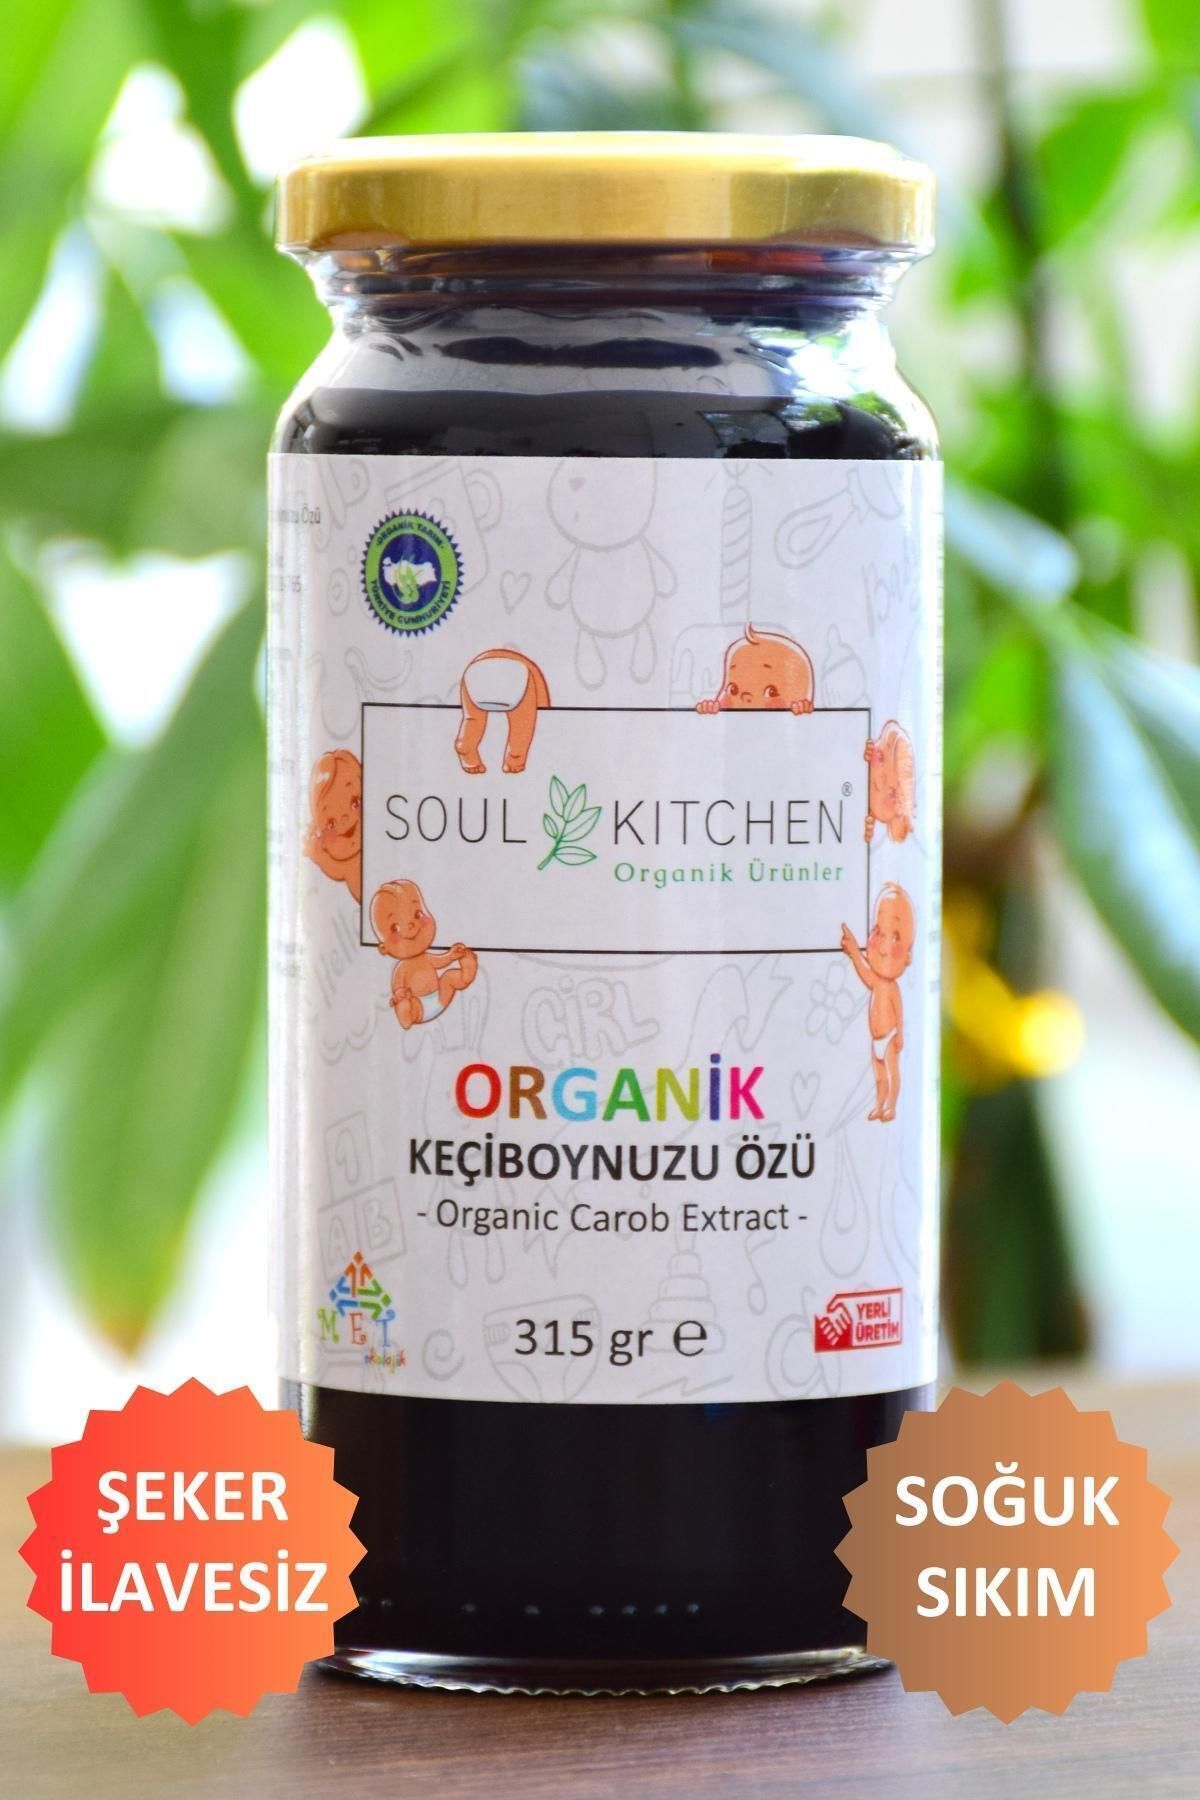 Soul Kitchen Organik Ürünler Organik Bebek Keçiboynuzu Özü 315gr-(SOĞUK SIKIM) (ŞEKER İLAVESİZ)